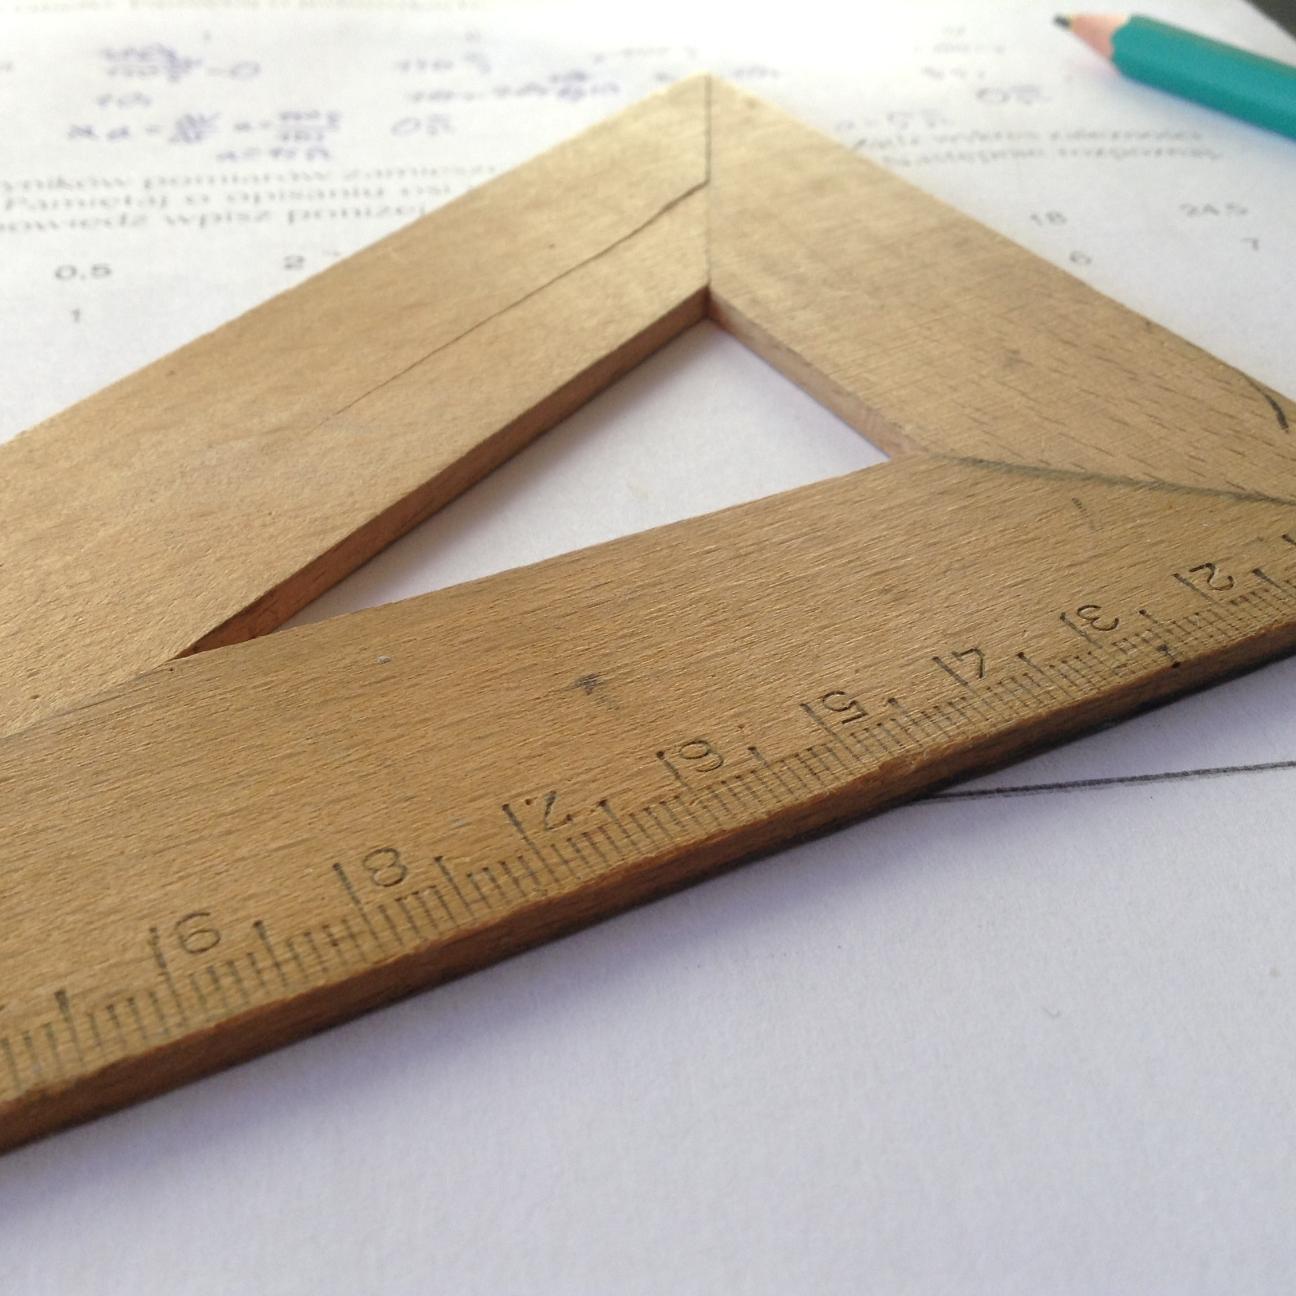 Ein Geodreieck aus Holz liegt auf einem beschriebenen Blatt, daneben ein grüner Bleistift.